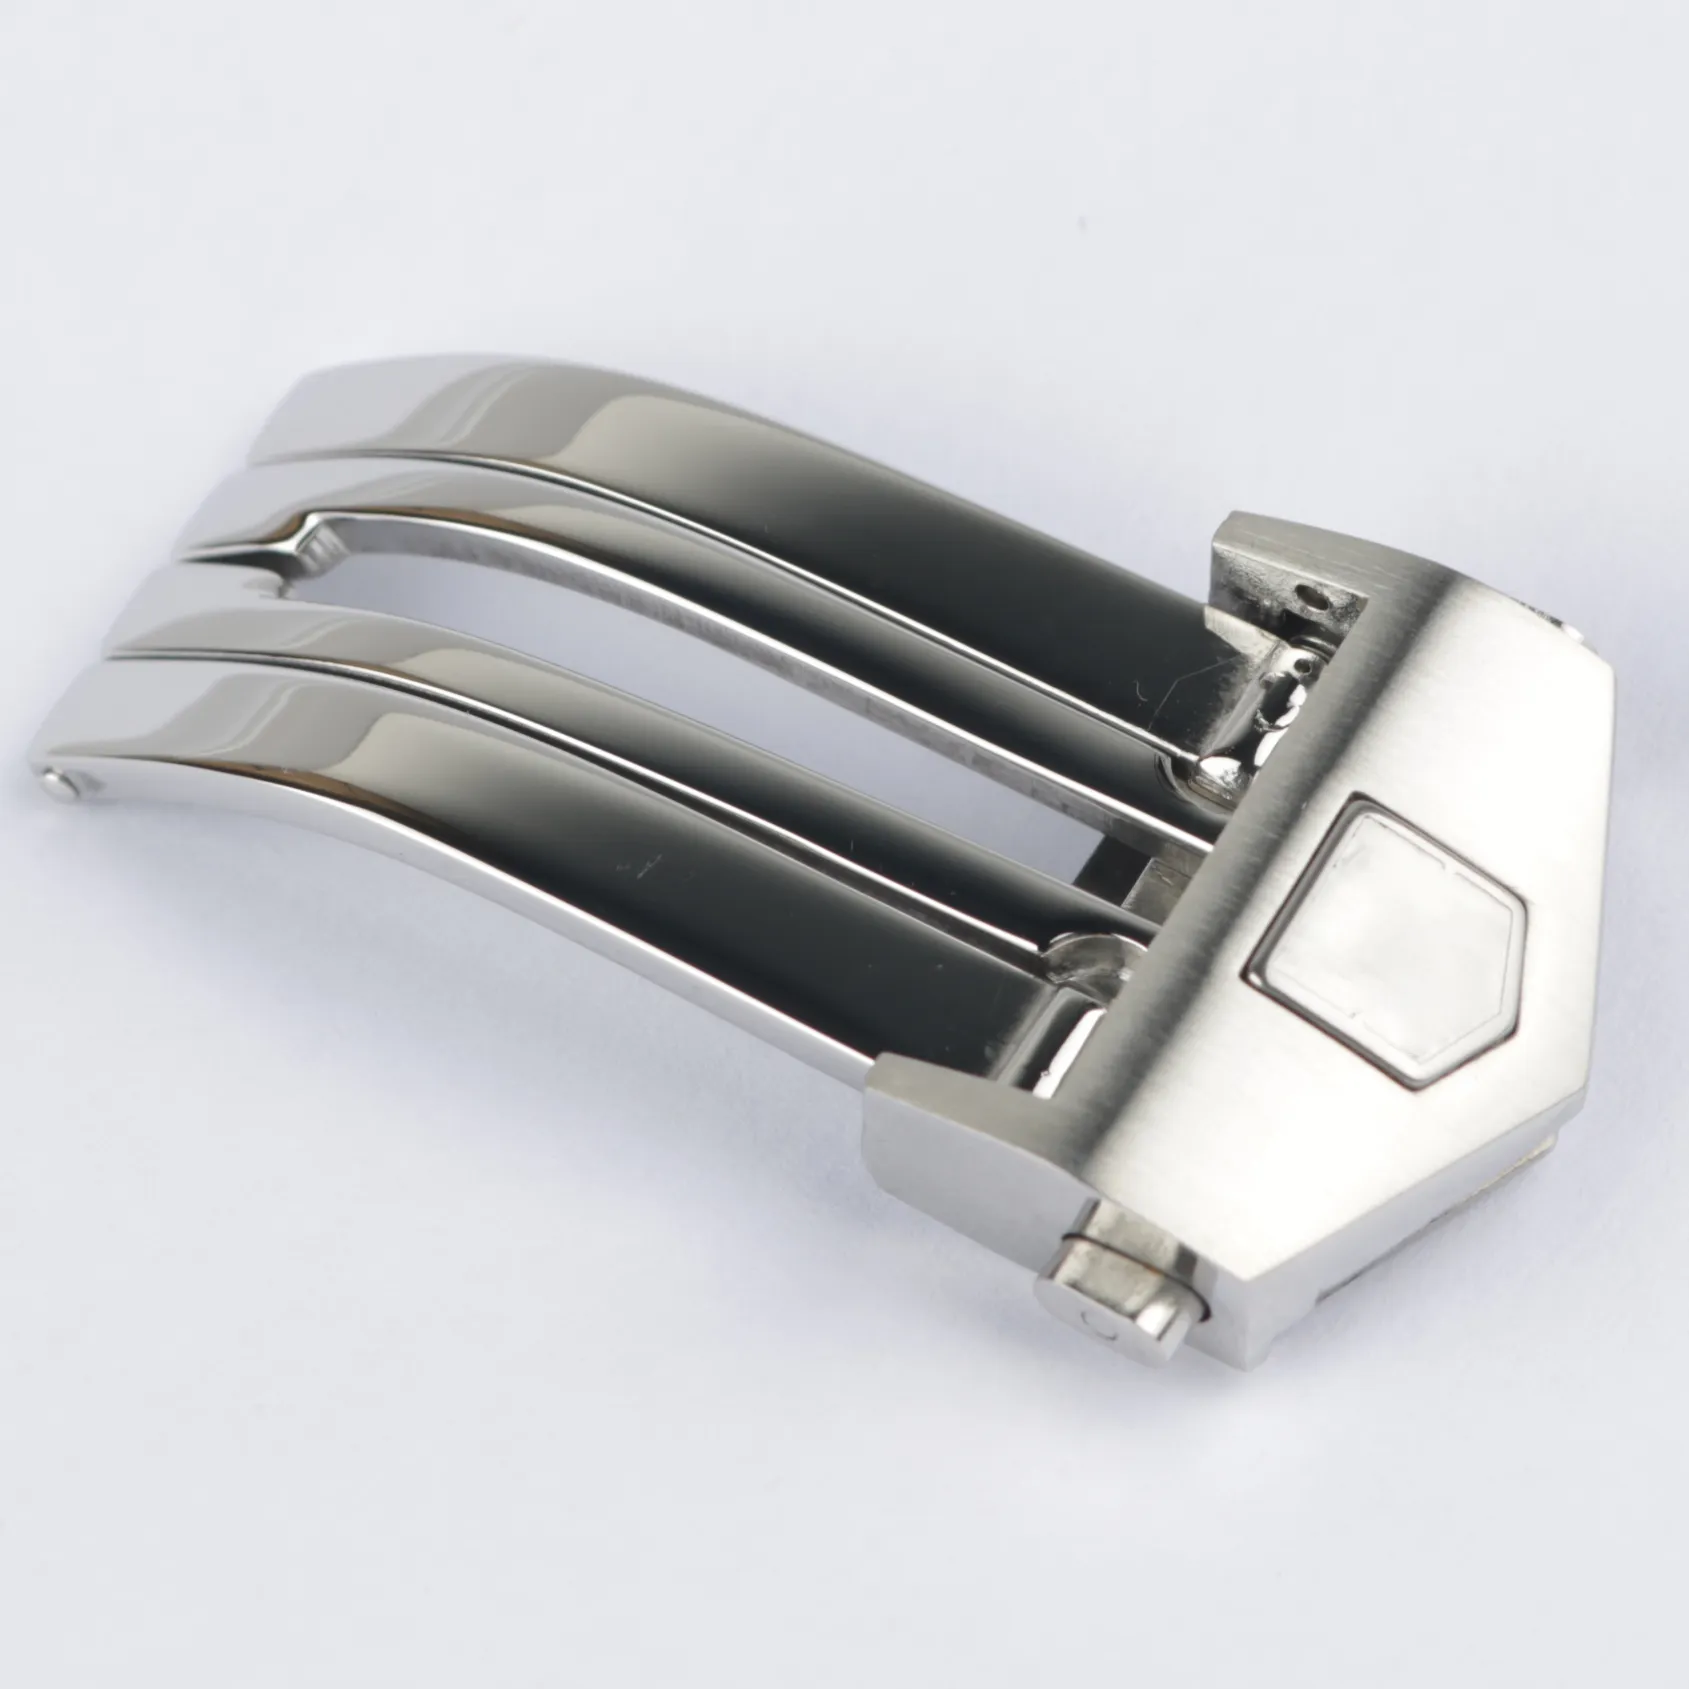 16 18 20mm pulseira de relógio fivela implantação fecho prata aço inoxidável de alta qualidade presente tag239k